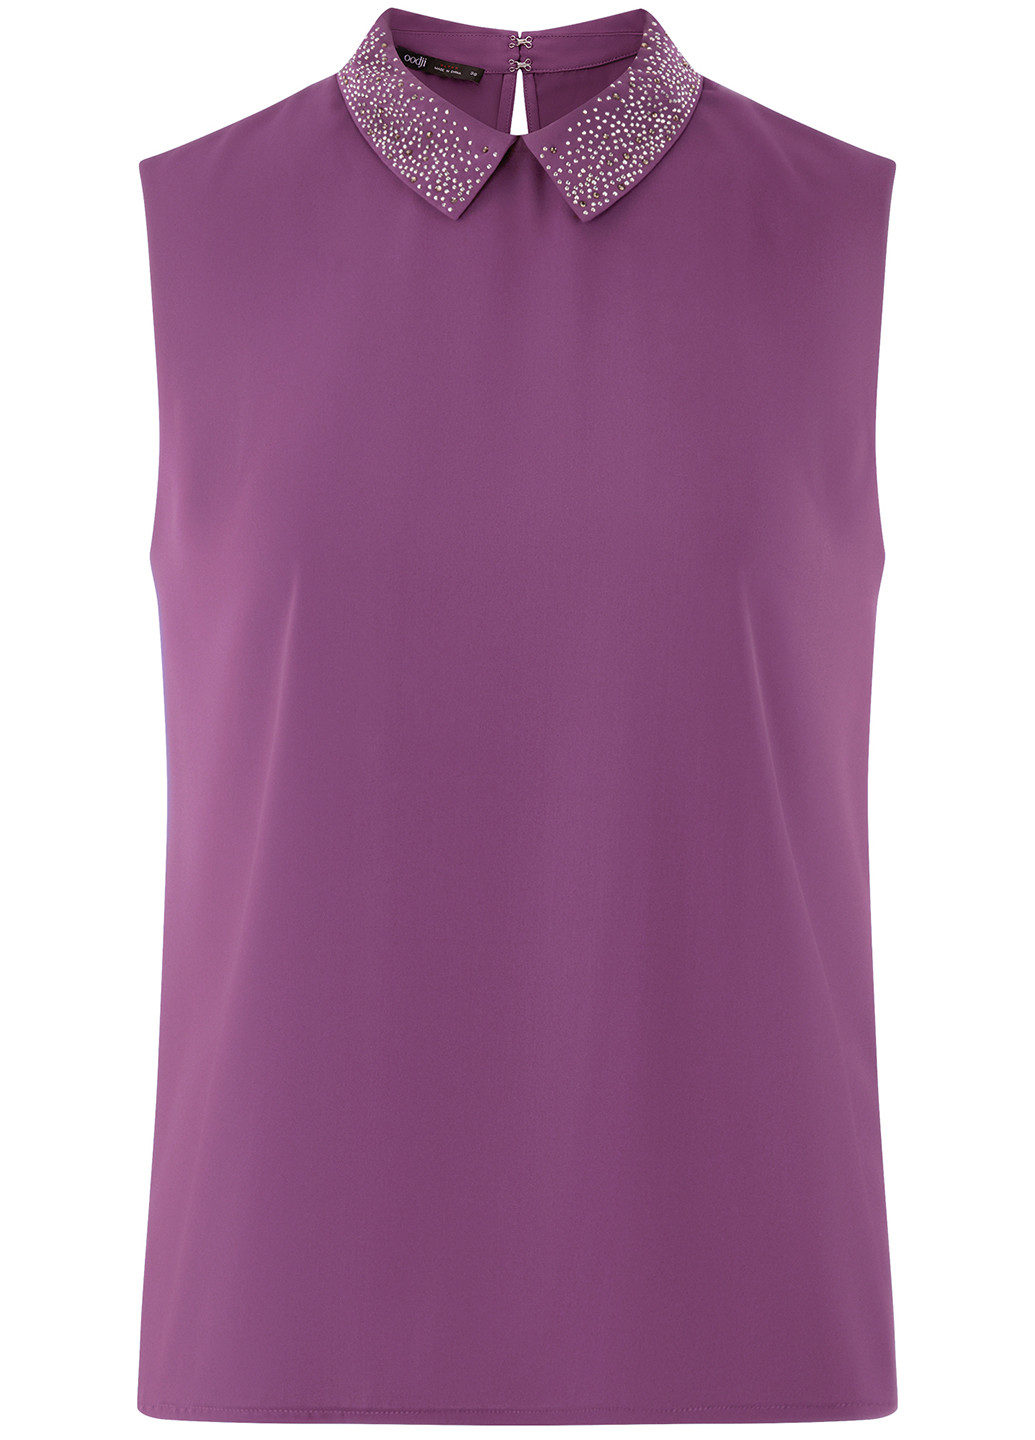 Фиолетовая летняя блуза Oodji